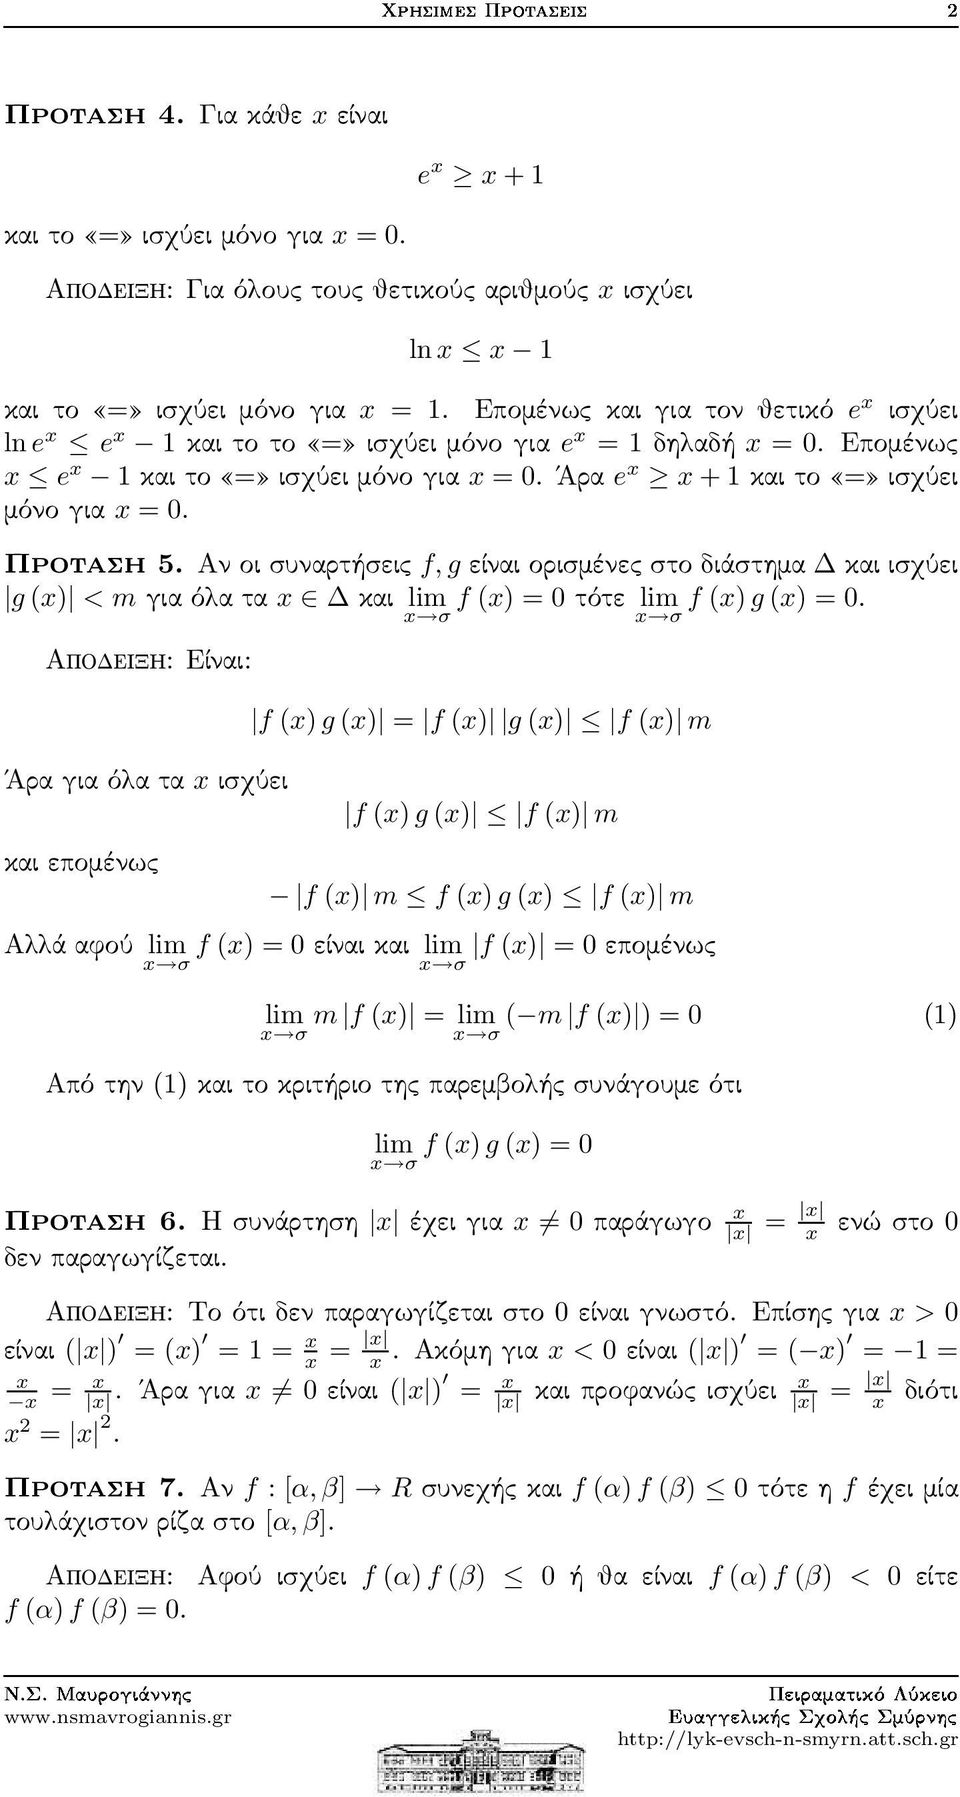 Αν οι συνρτήσεις f, g είνι ορισμένες στο διάστημ κι ισχύει g () < mγιόλτ κι lim f () = τότε lim f () g () =.